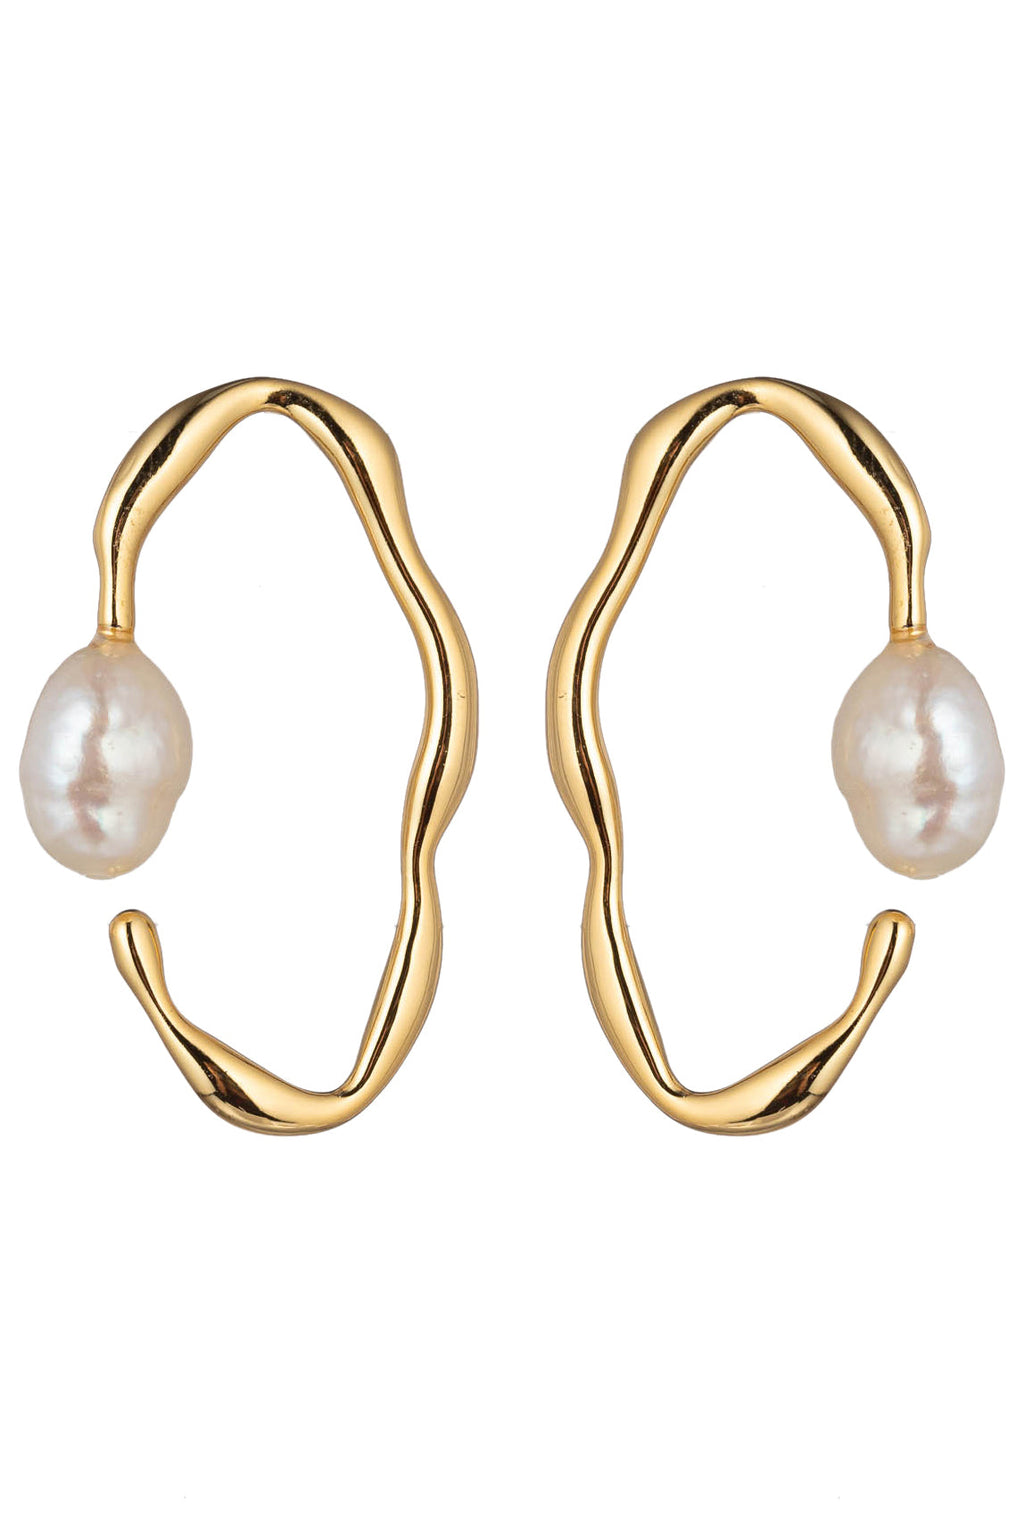 Alice Shell Pearl Earring: Ocean-Inspired Elegance.